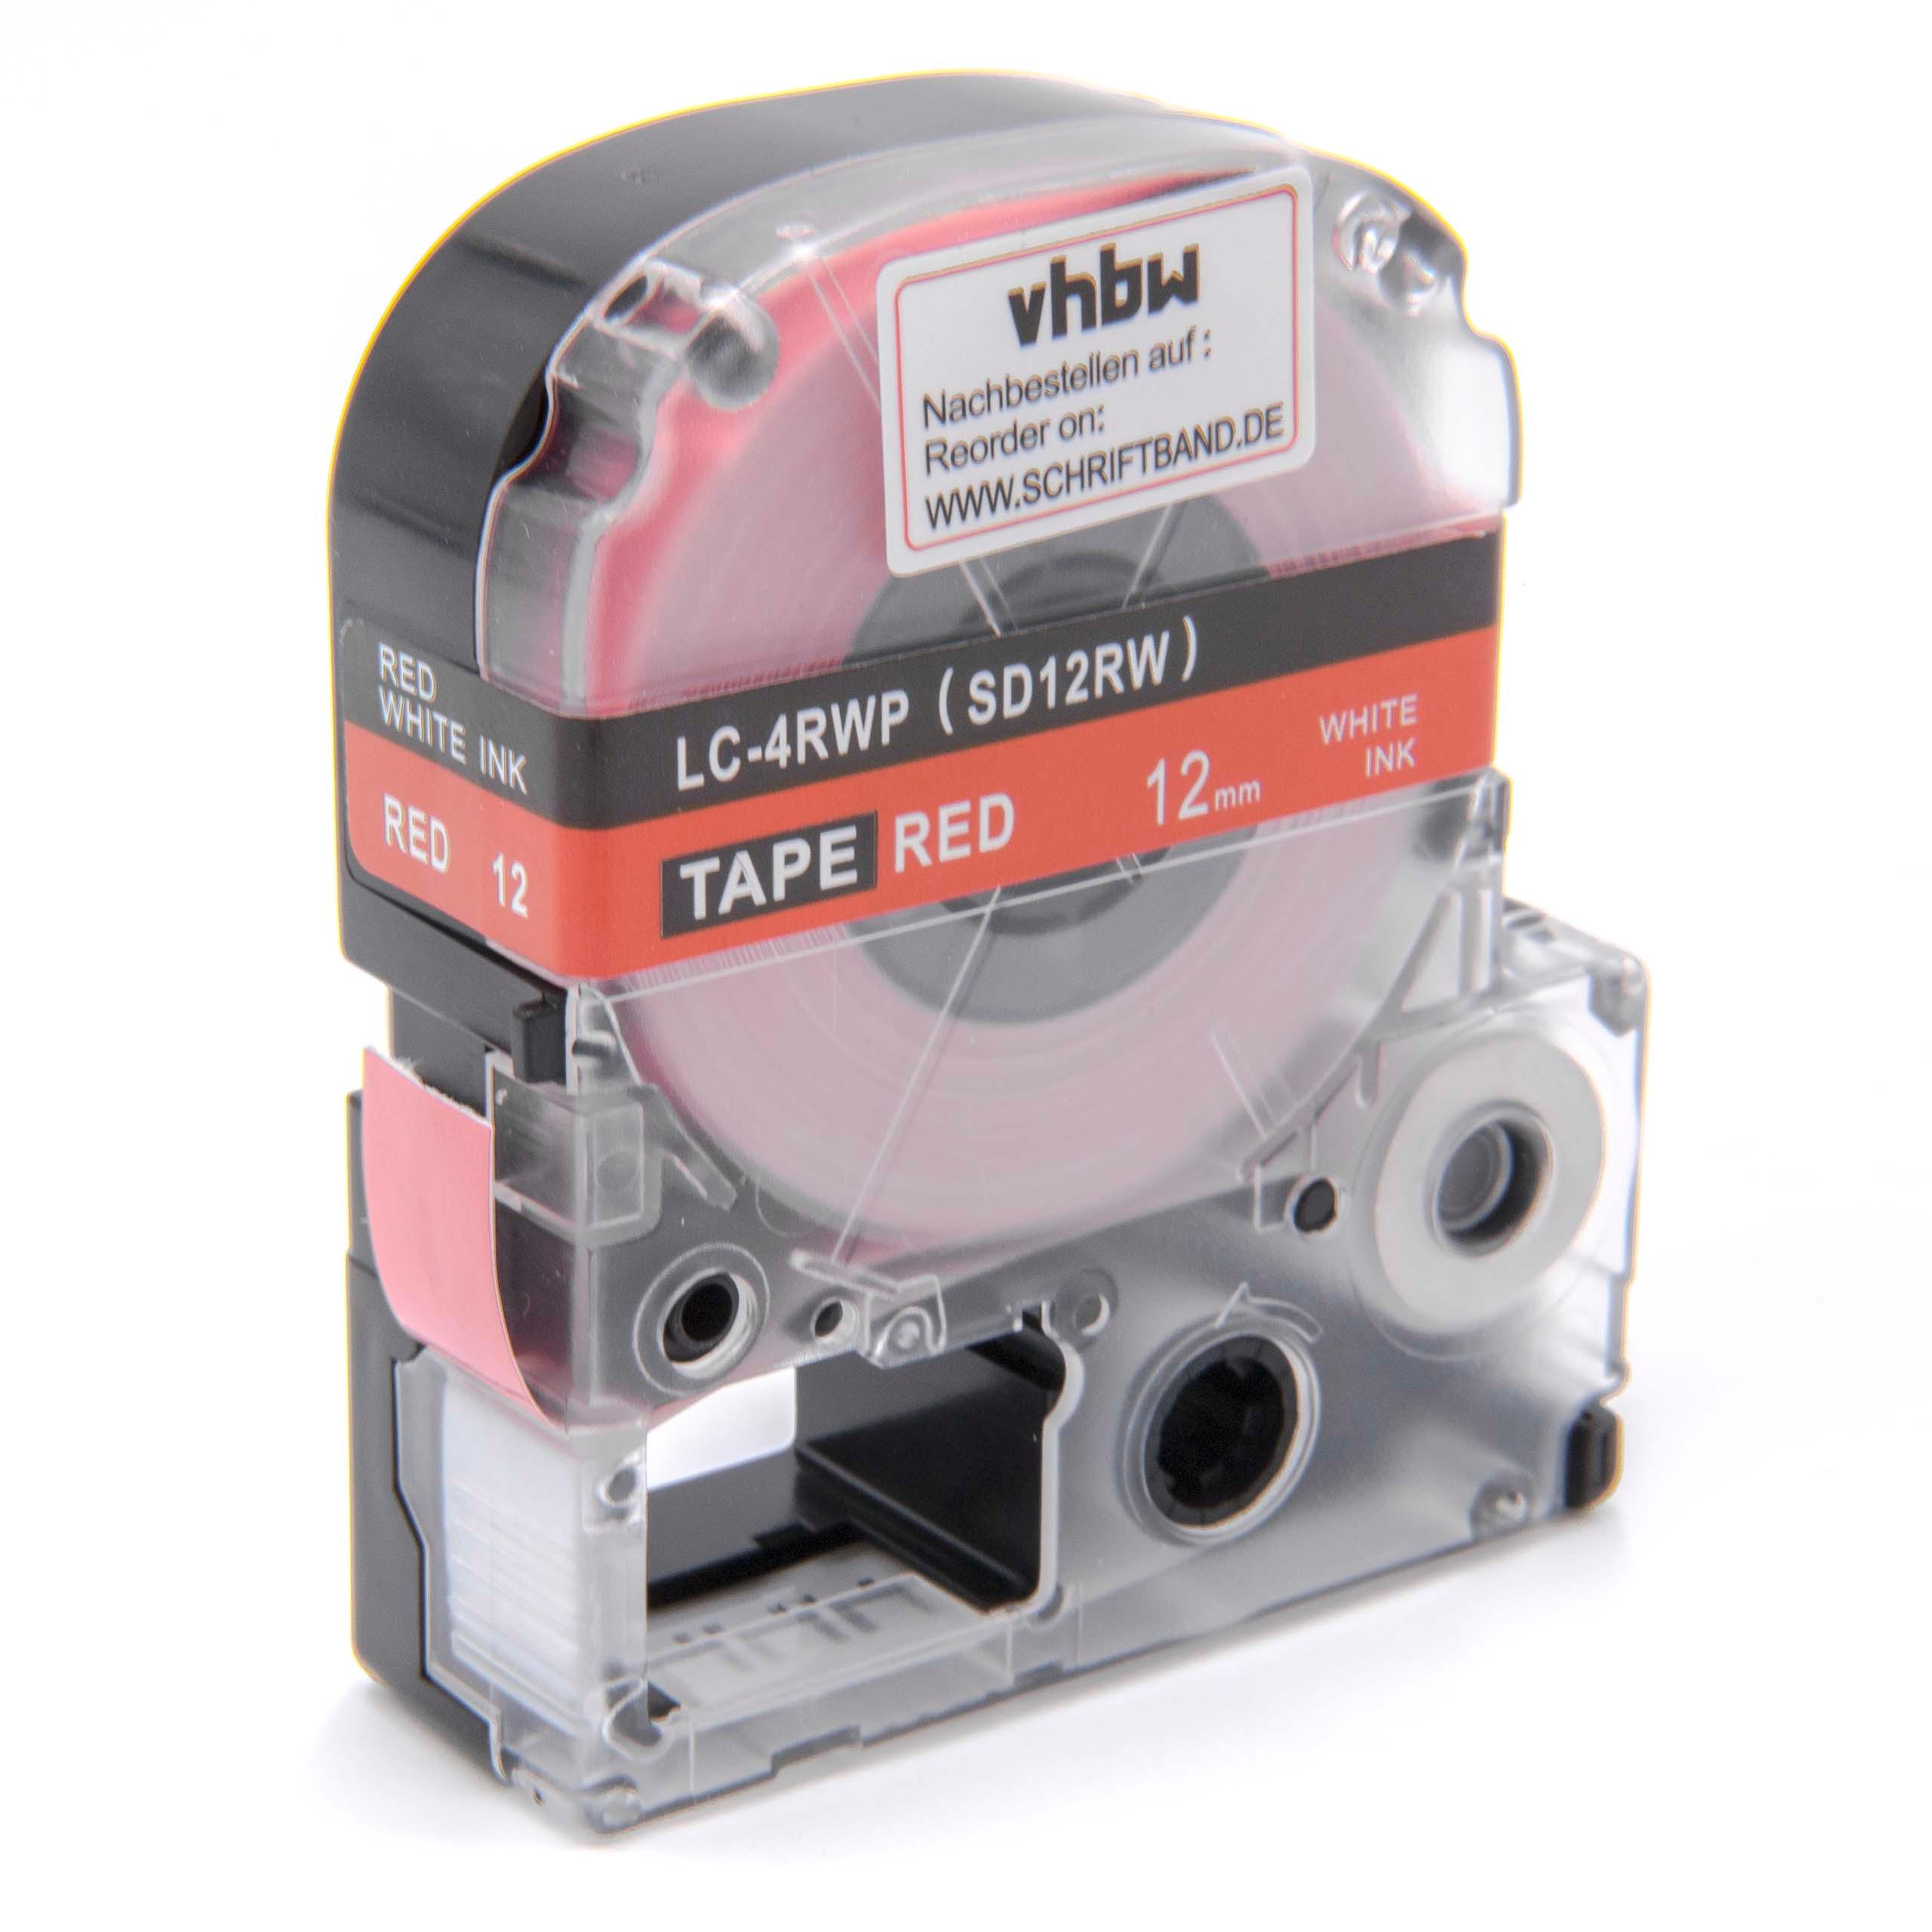 Cassetta nastro sostituisce Epson LC-4RWP per etichettatrice Epson 12mm bianco su rosso